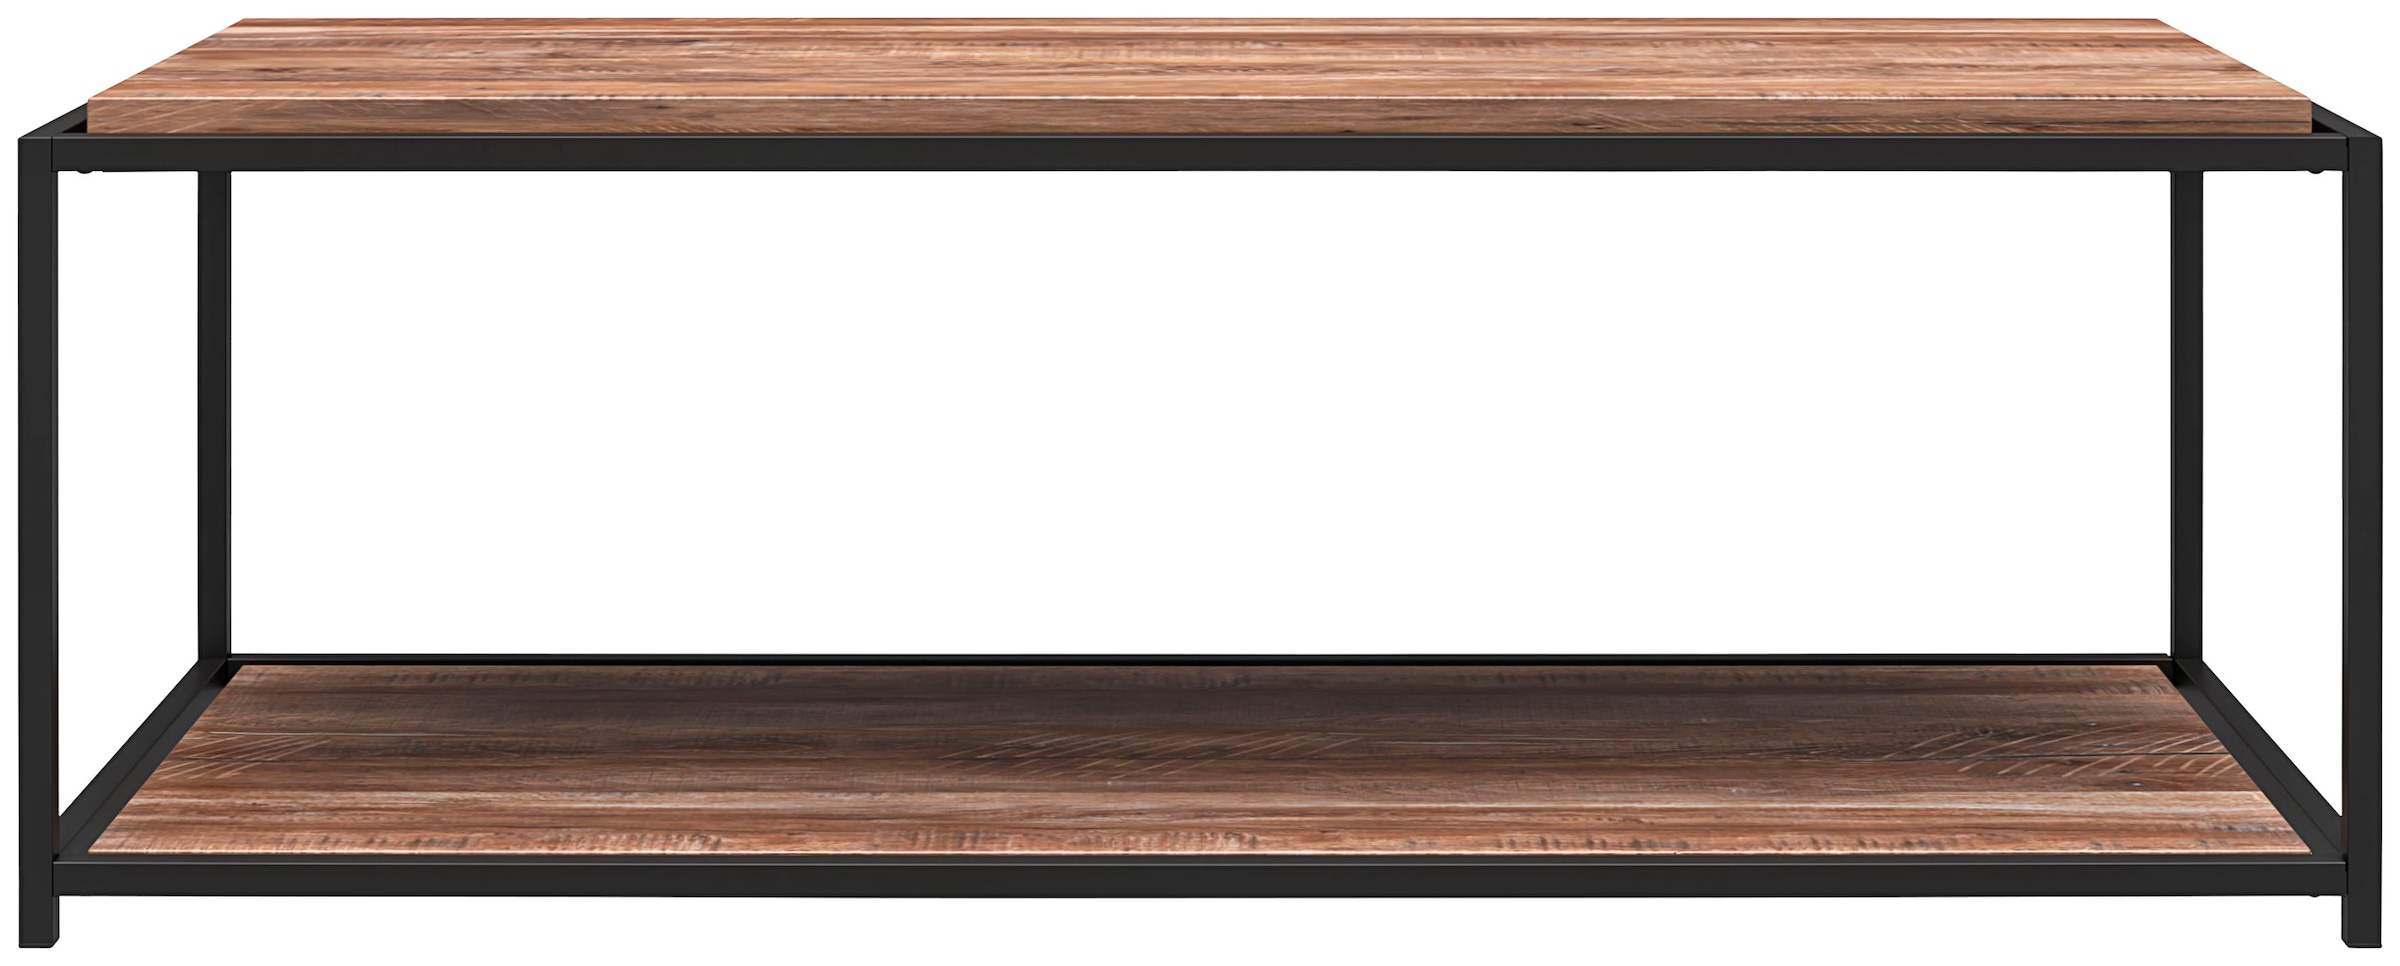 Dorel Home Couchtisch »Quincy«, (1 St.), Couchtisch, schwebender Tischplatten-Look, Breite 52 cm, Höhe 46 cm